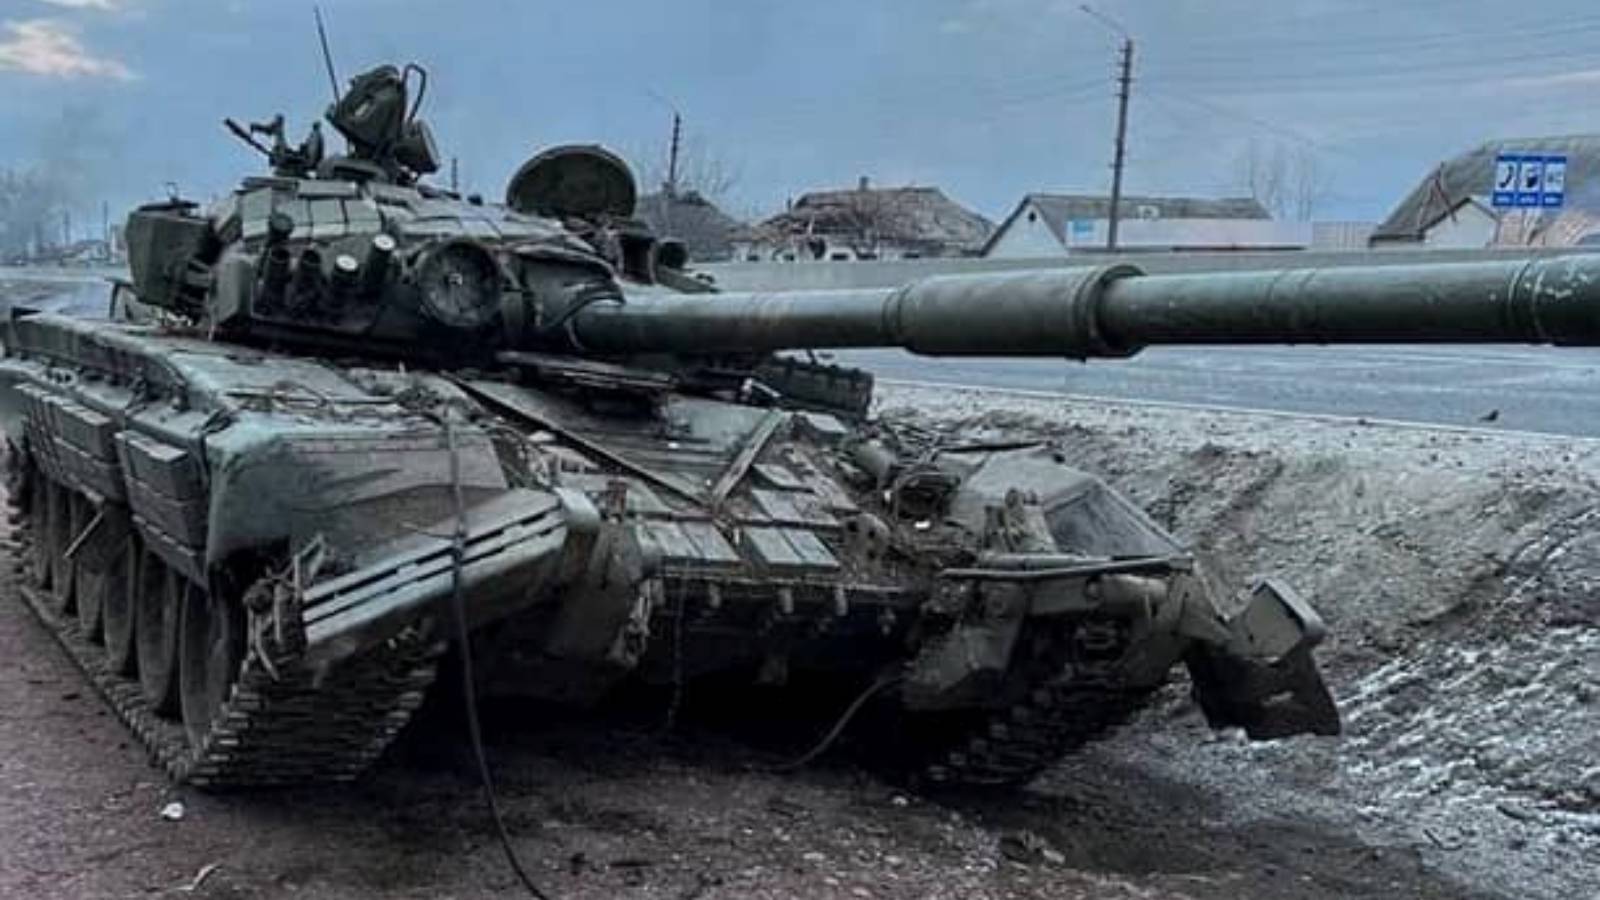 VIDEO Armata Ucraineana Distruge Tancuri Rusesti Folosind Rachete Ghidate